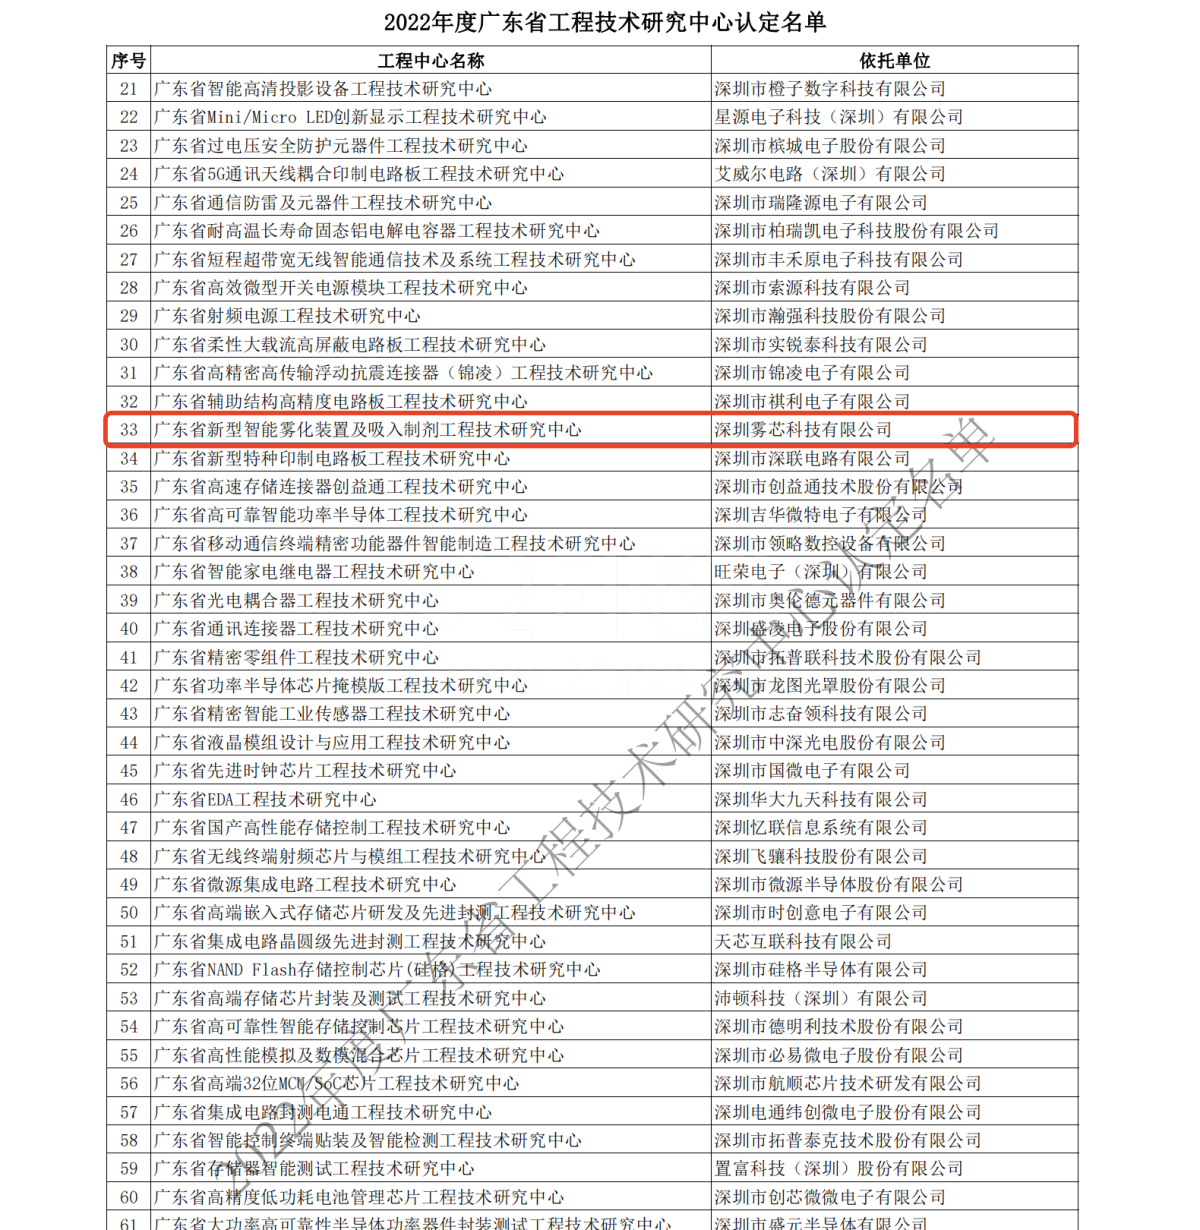 雾芯科技入选广东省工程技术研究中心名单